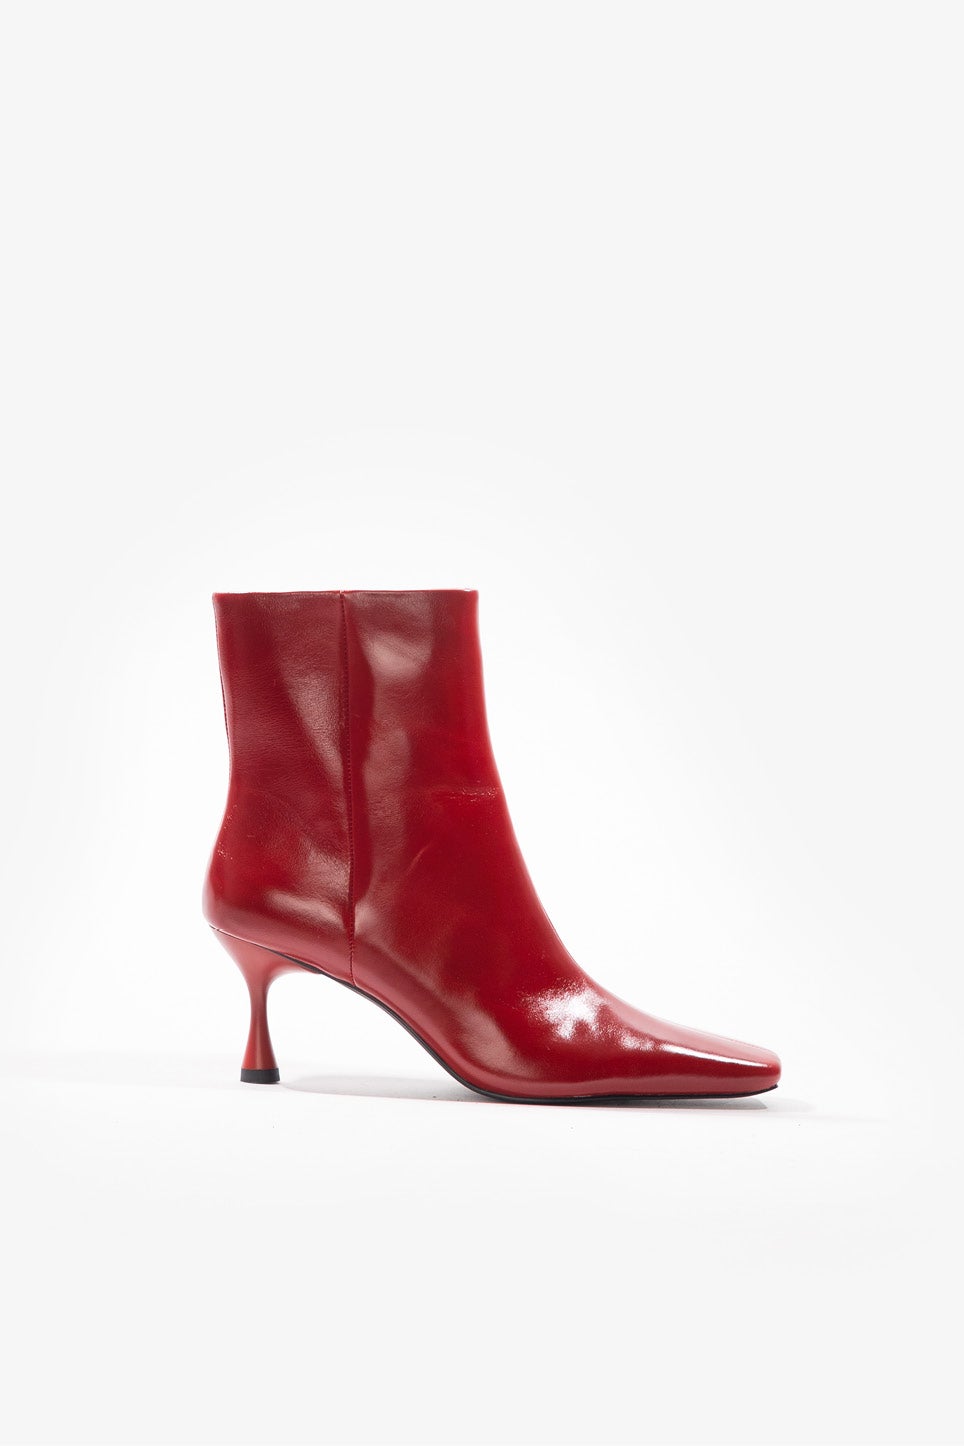 ASOS DESIGN Esme embellished heeled sock boots in red | ASOS